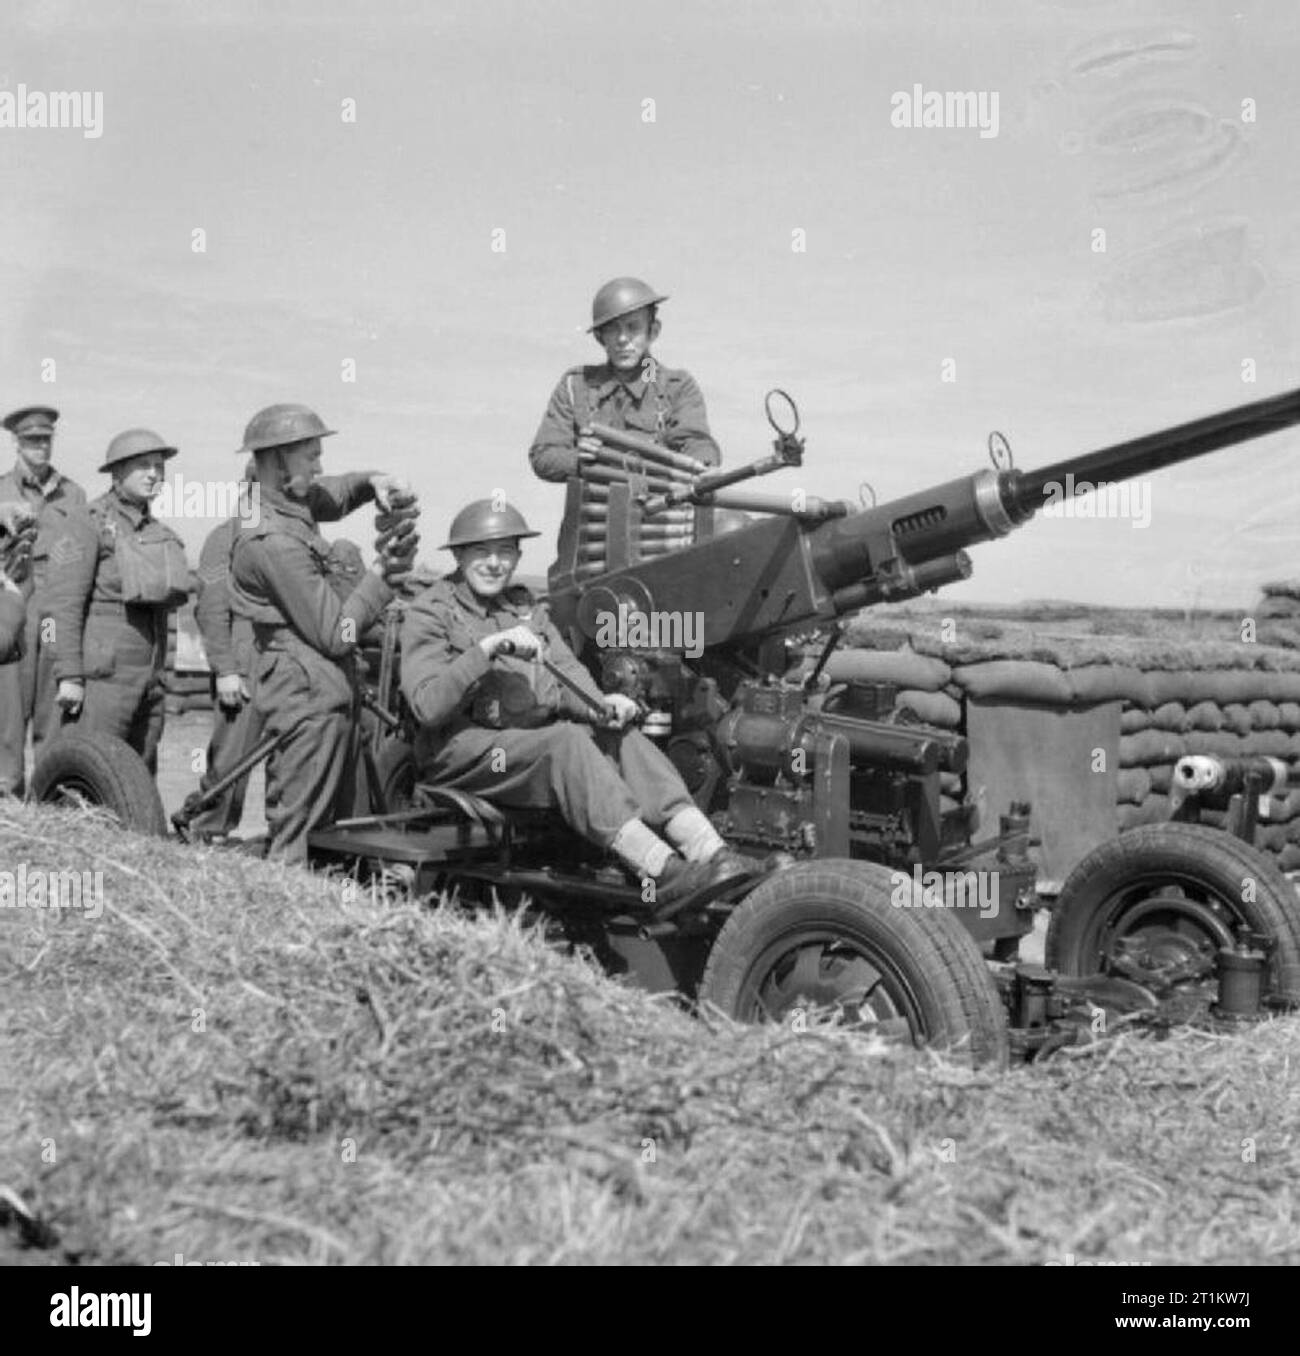 En temps de guerre les Scillies- la vie quotidienne sur les îles Scilly, 1941 Smiling membres d'un canon anti-aérien pose devant l'appareil photo de l'équipage à leurs postes, quelque part dans les îles Scilly, 1941. Banque D'Images